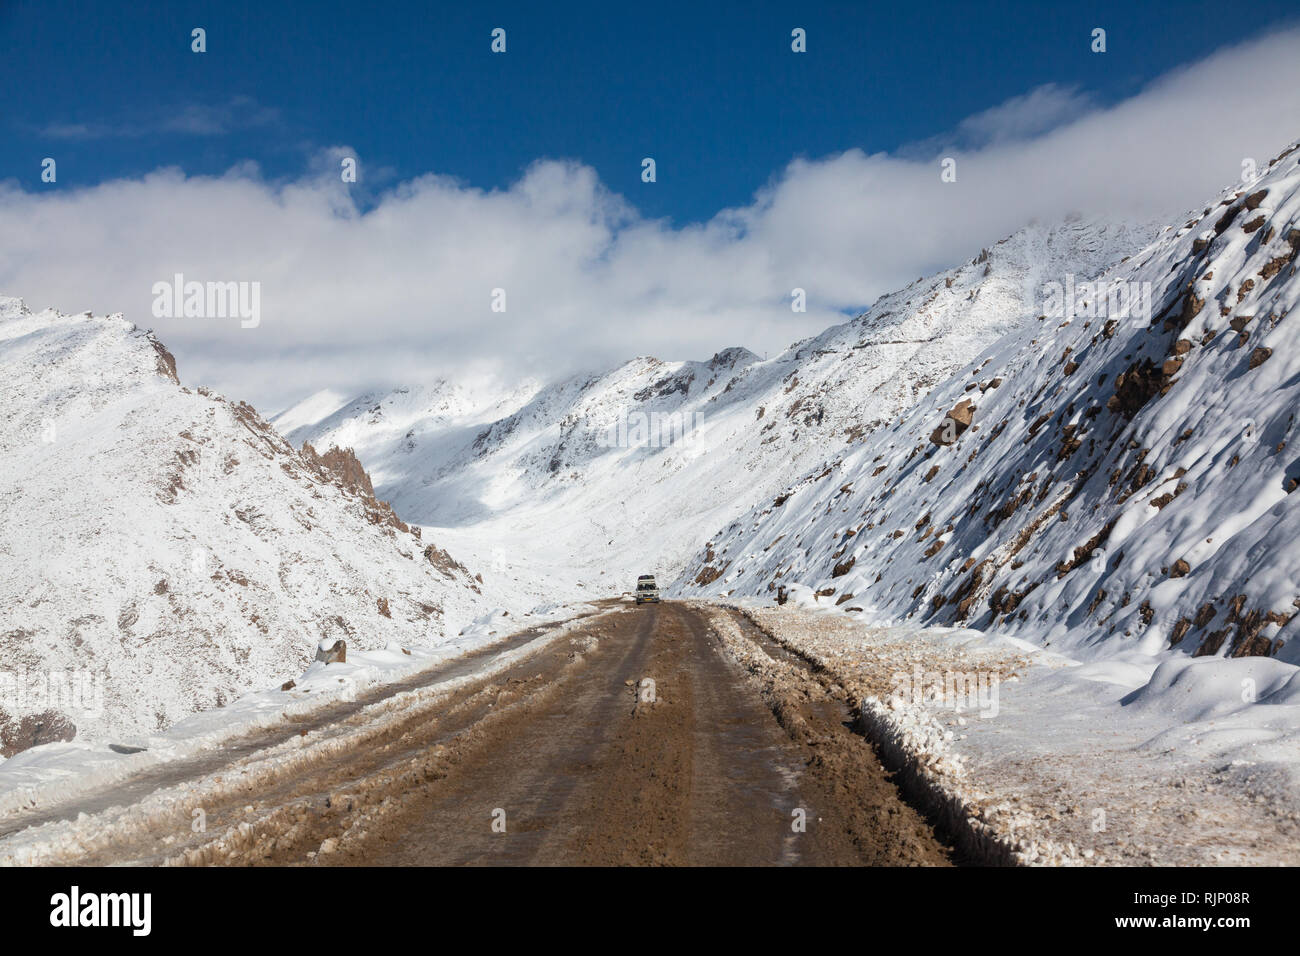 Difíciles condiciones causadas por la caída de nieve en la carretera que une la alta altitud de Leh y Khardung La, Ladakh, Jammu y Cachemira, la India Foto de stock